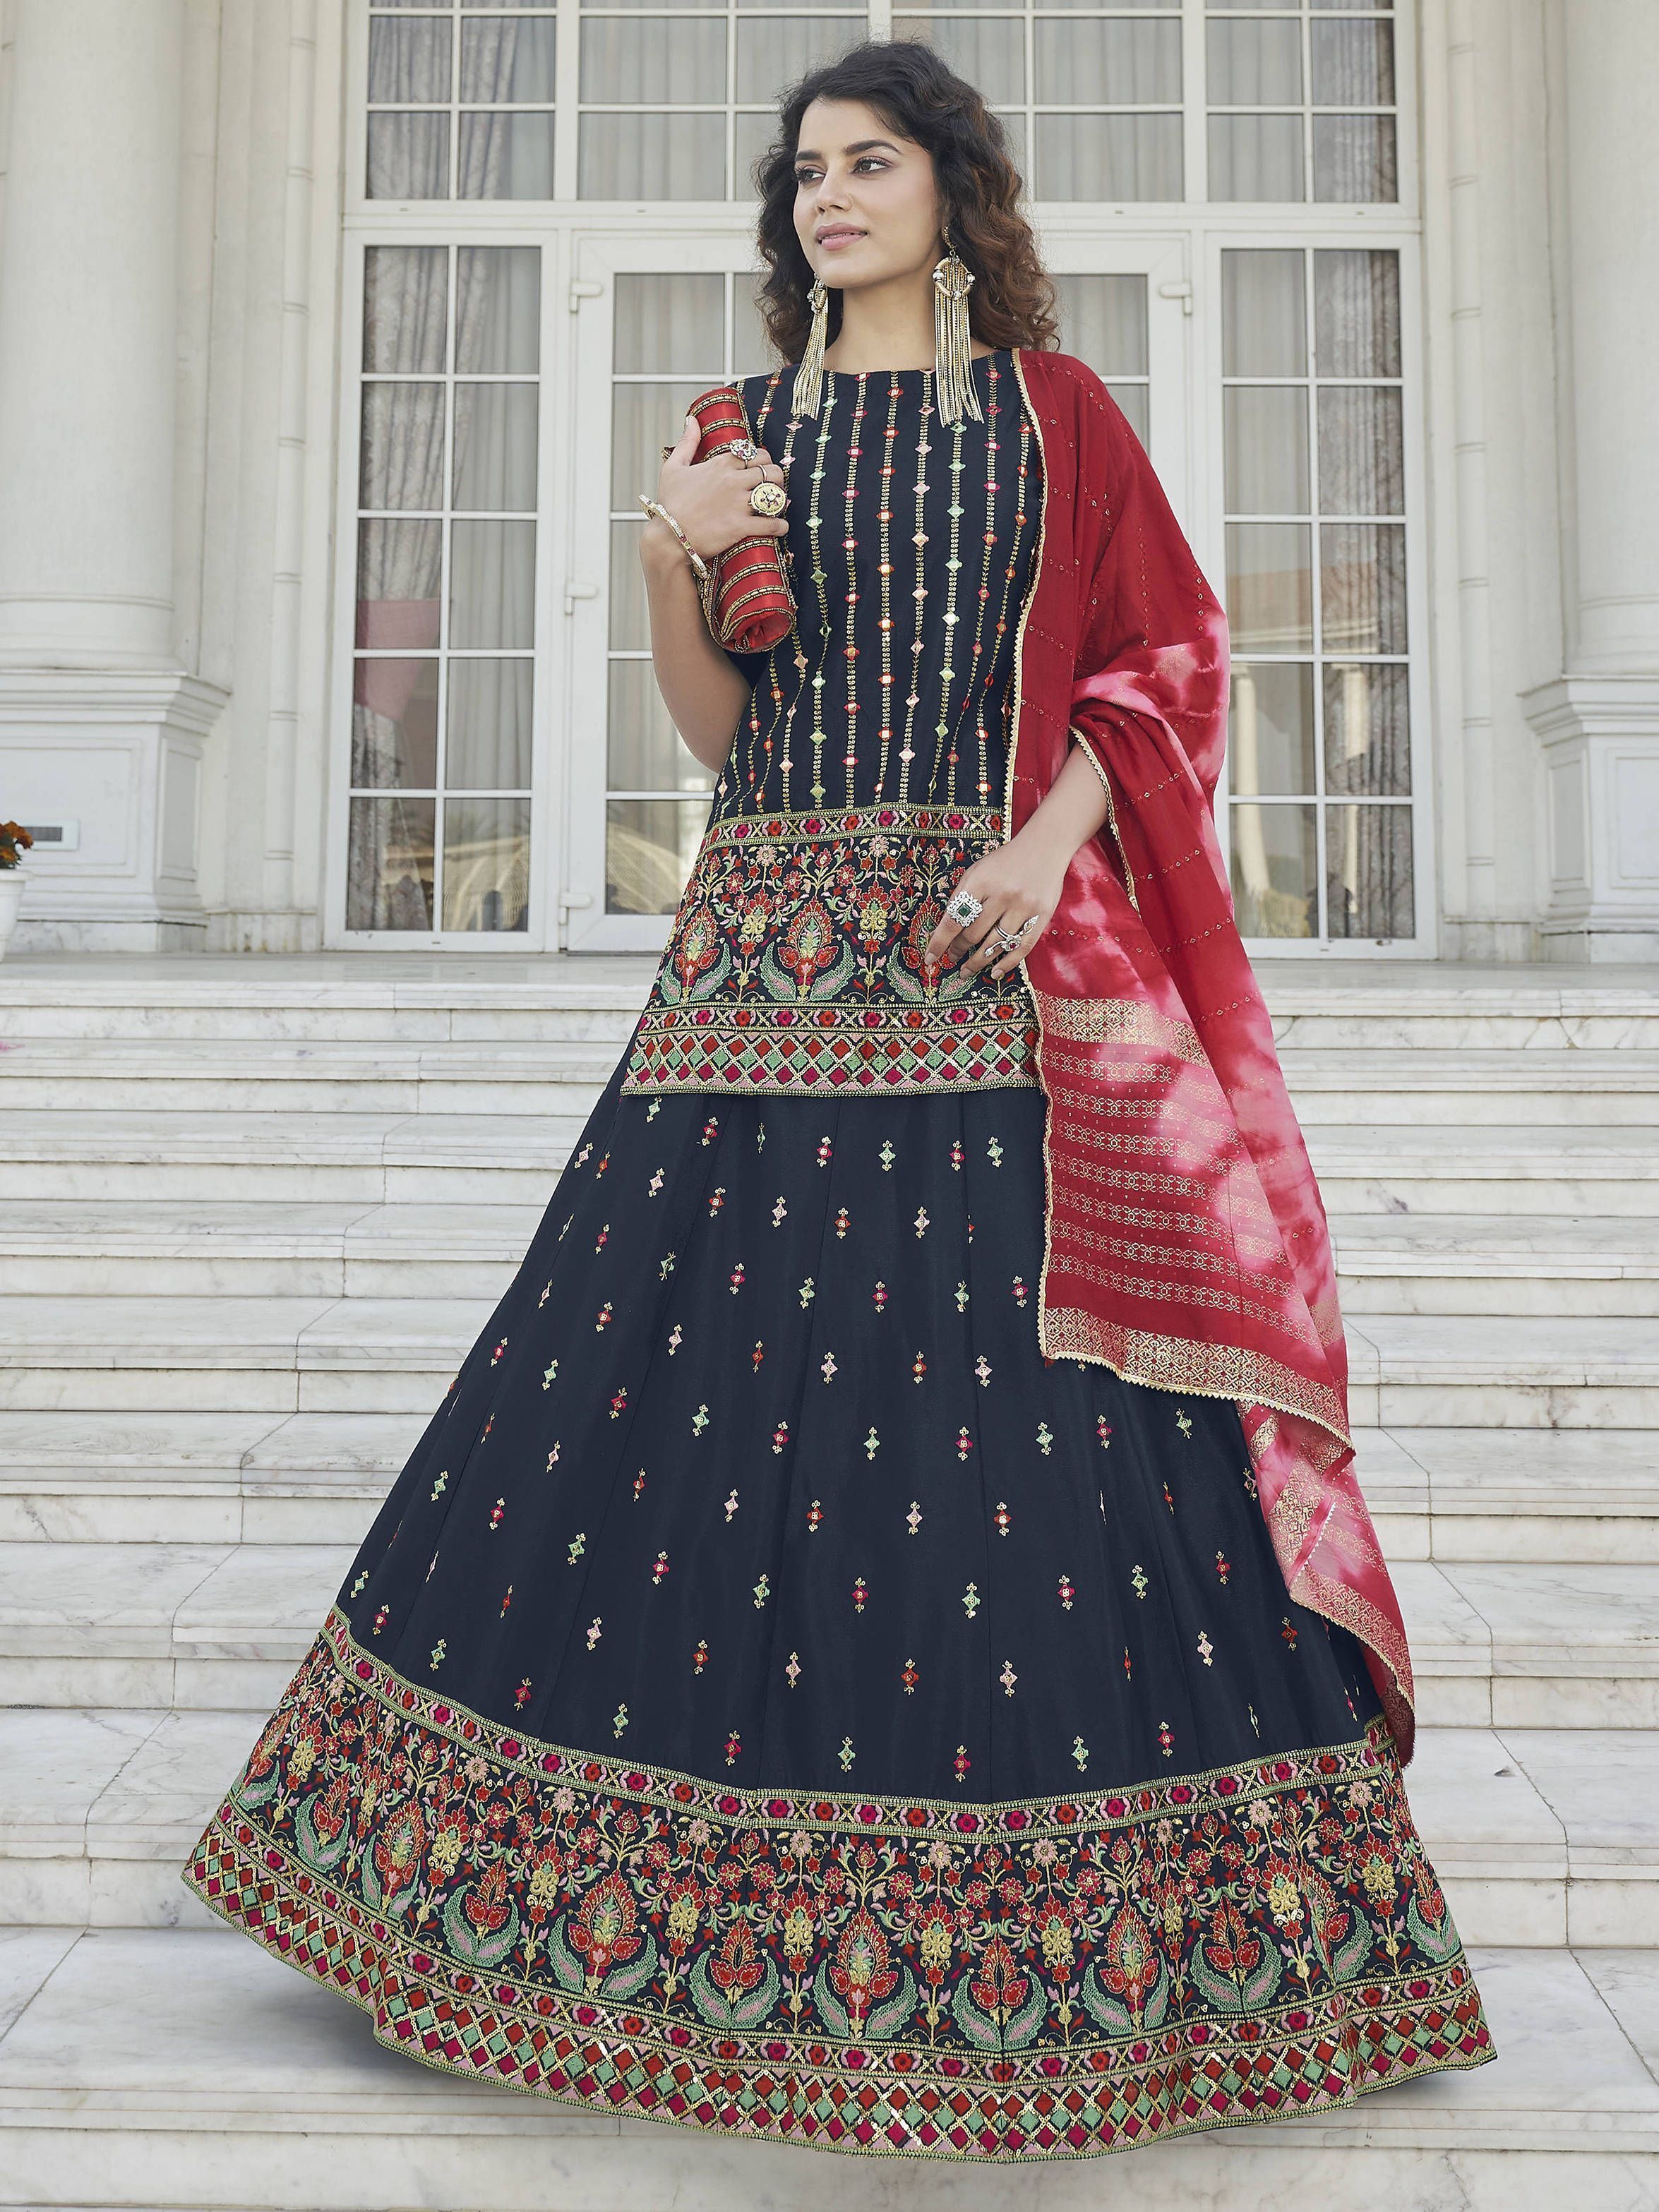 Designer Lehenga for Women, Rajasthani Lehenga Bridesmaids Lehenga Choli,  Indian Traditional Outfit Wedding Lehengas, Custom Made Lengha - Etsy